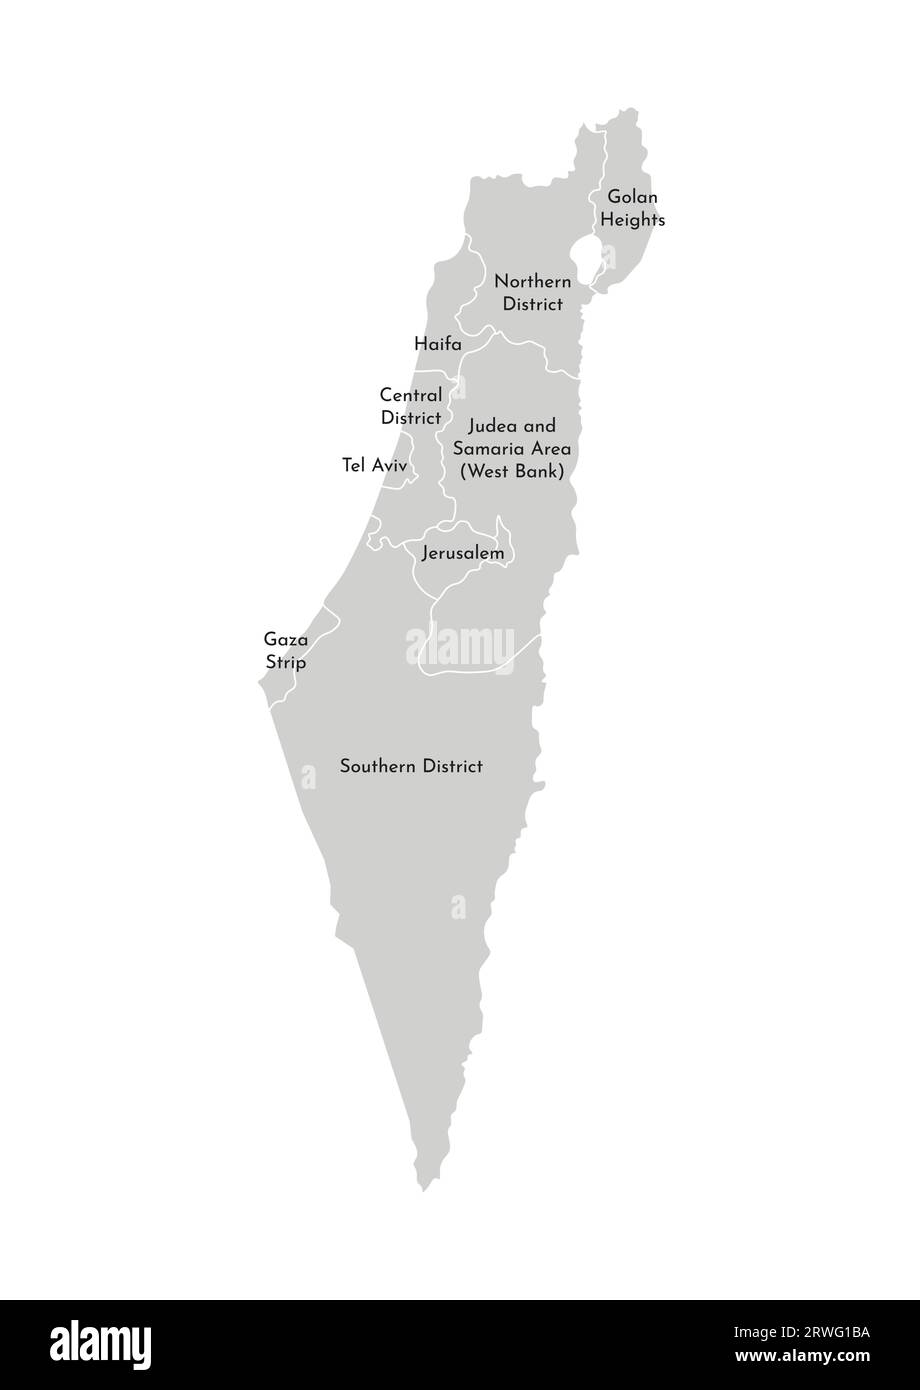 Illustrazione vettoriale isolata della mappa amministrativa semplificata di Israele. Confini e nomi dei distretti (regioni). Silhouette grigie. Contorno bianco Illustrazione Vettoriale